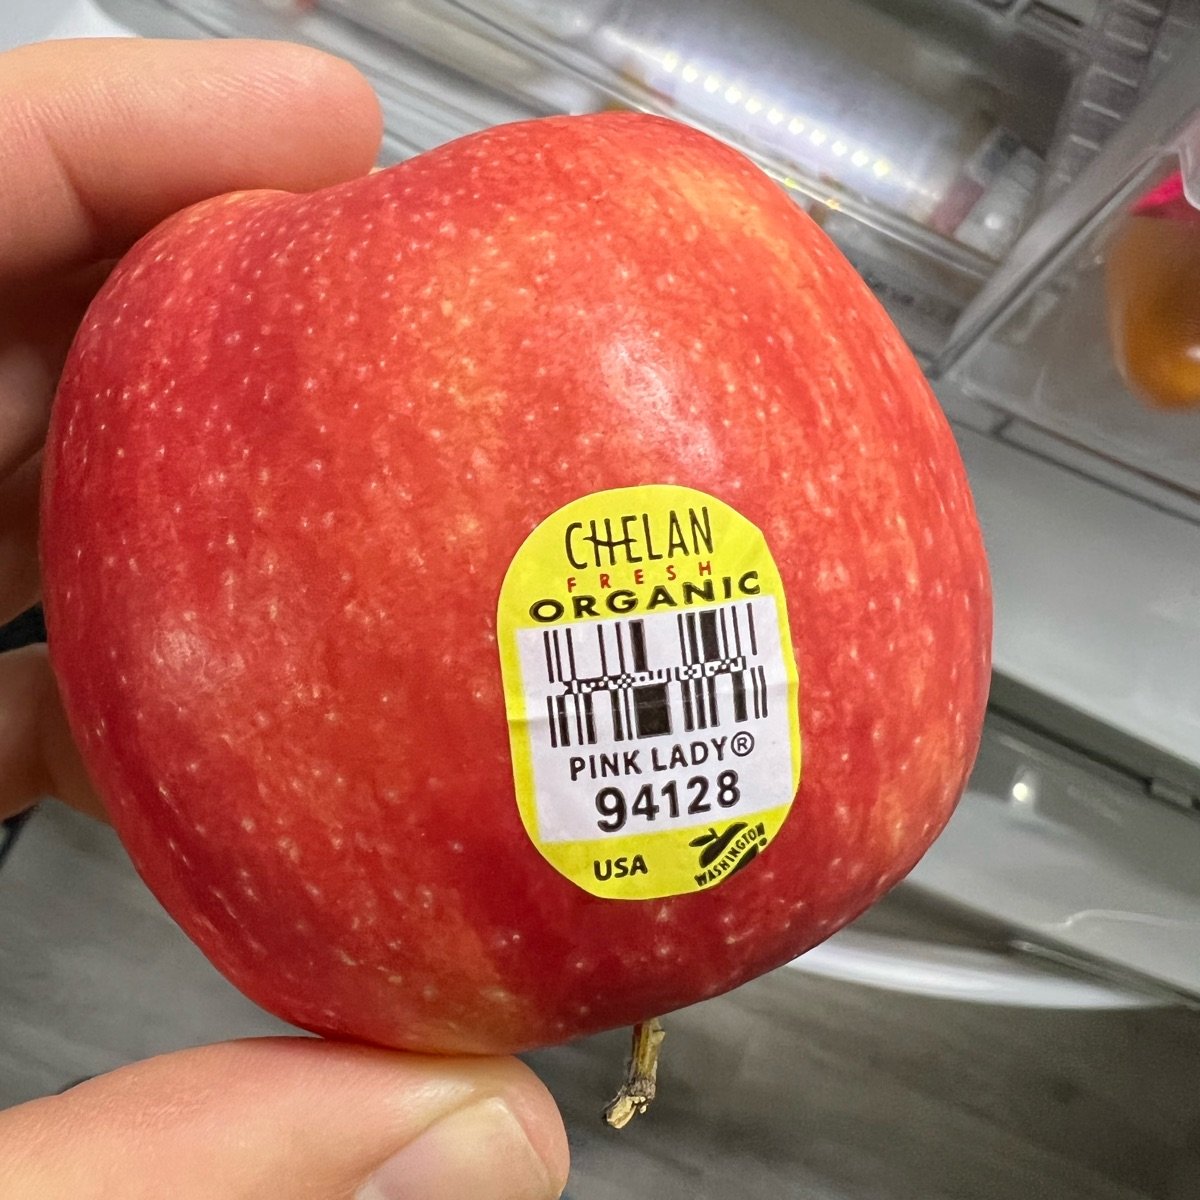 Chelan Fresh Pink Lady Apple Reviews